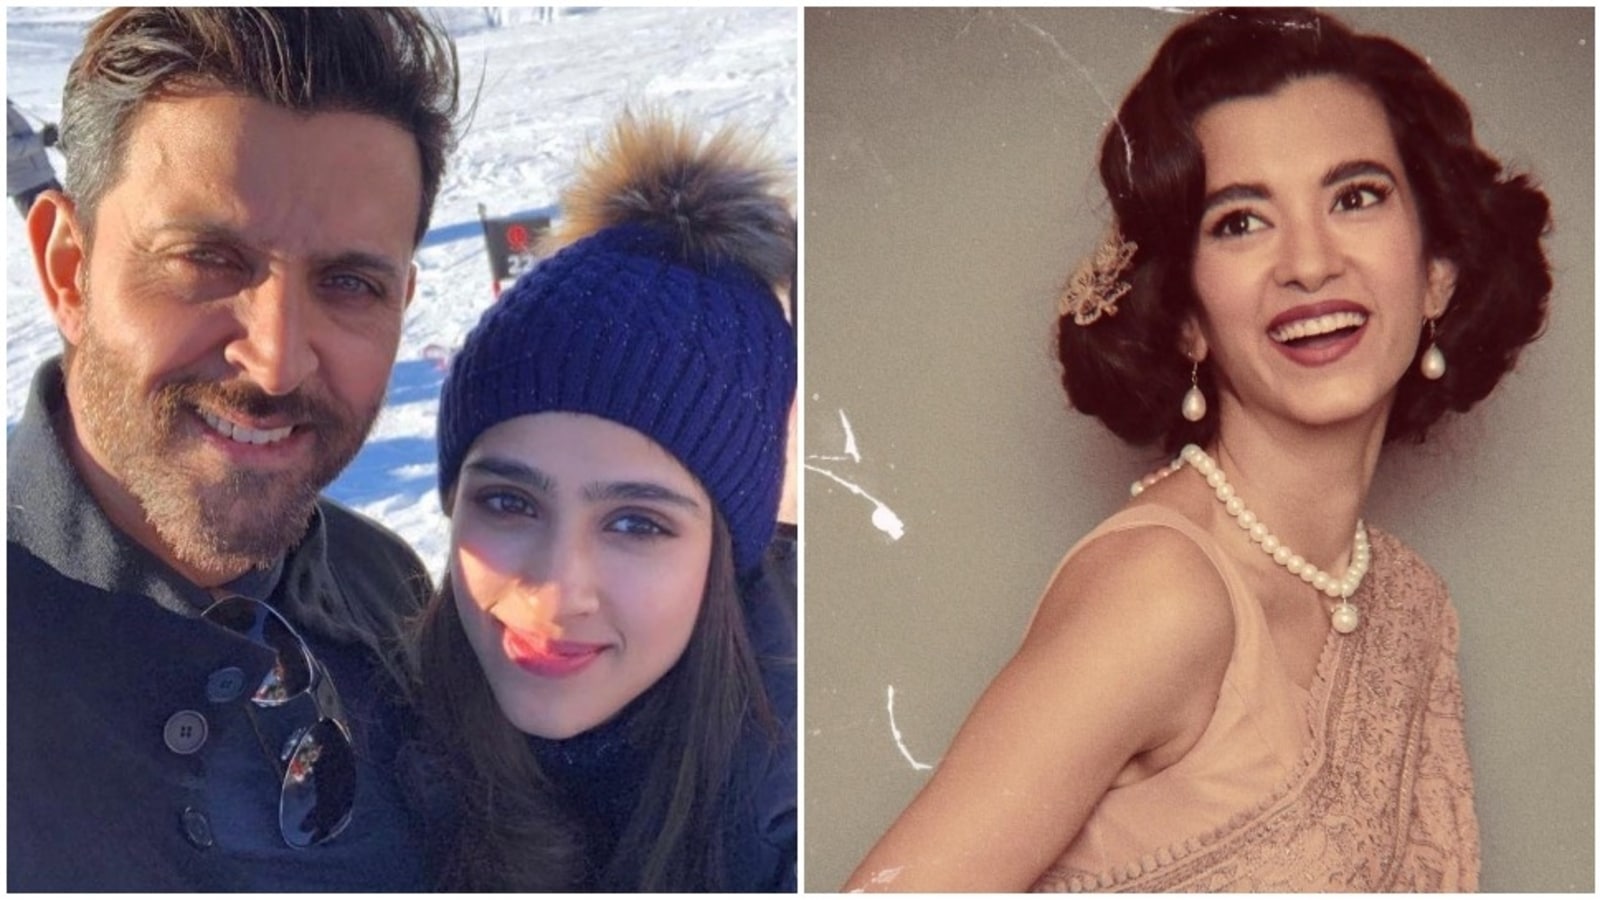 Primo de Hrithik Roshan, Pashmina deslumbra em foto de sua namorada Saba Azad, responde com beijos |  Bollywood